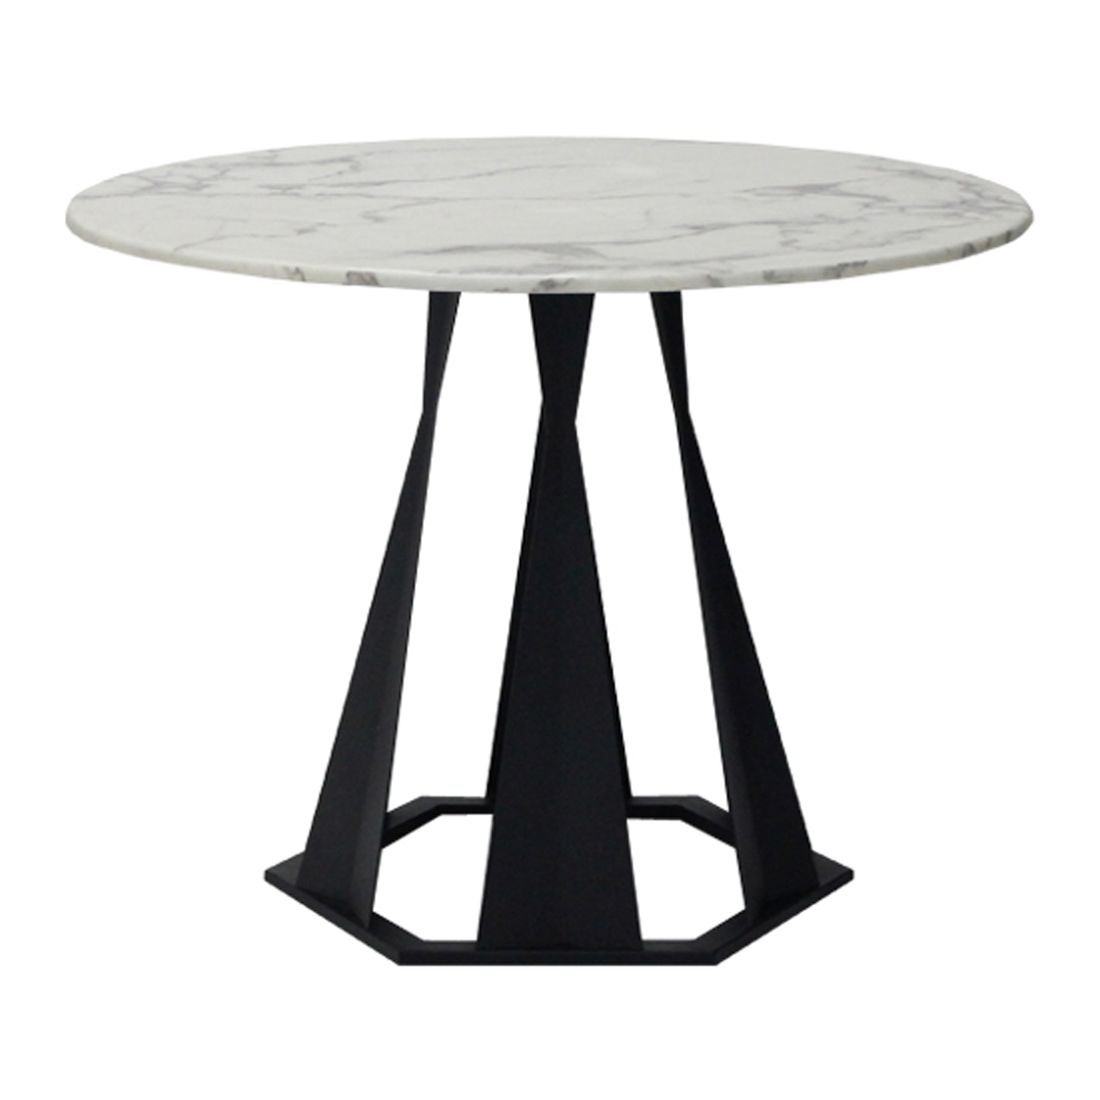 โต๊ะทานอาหาร โต๊ะอาหารขาเหล็กท๊อปหิน รุ่น Hershey-SB Design Square